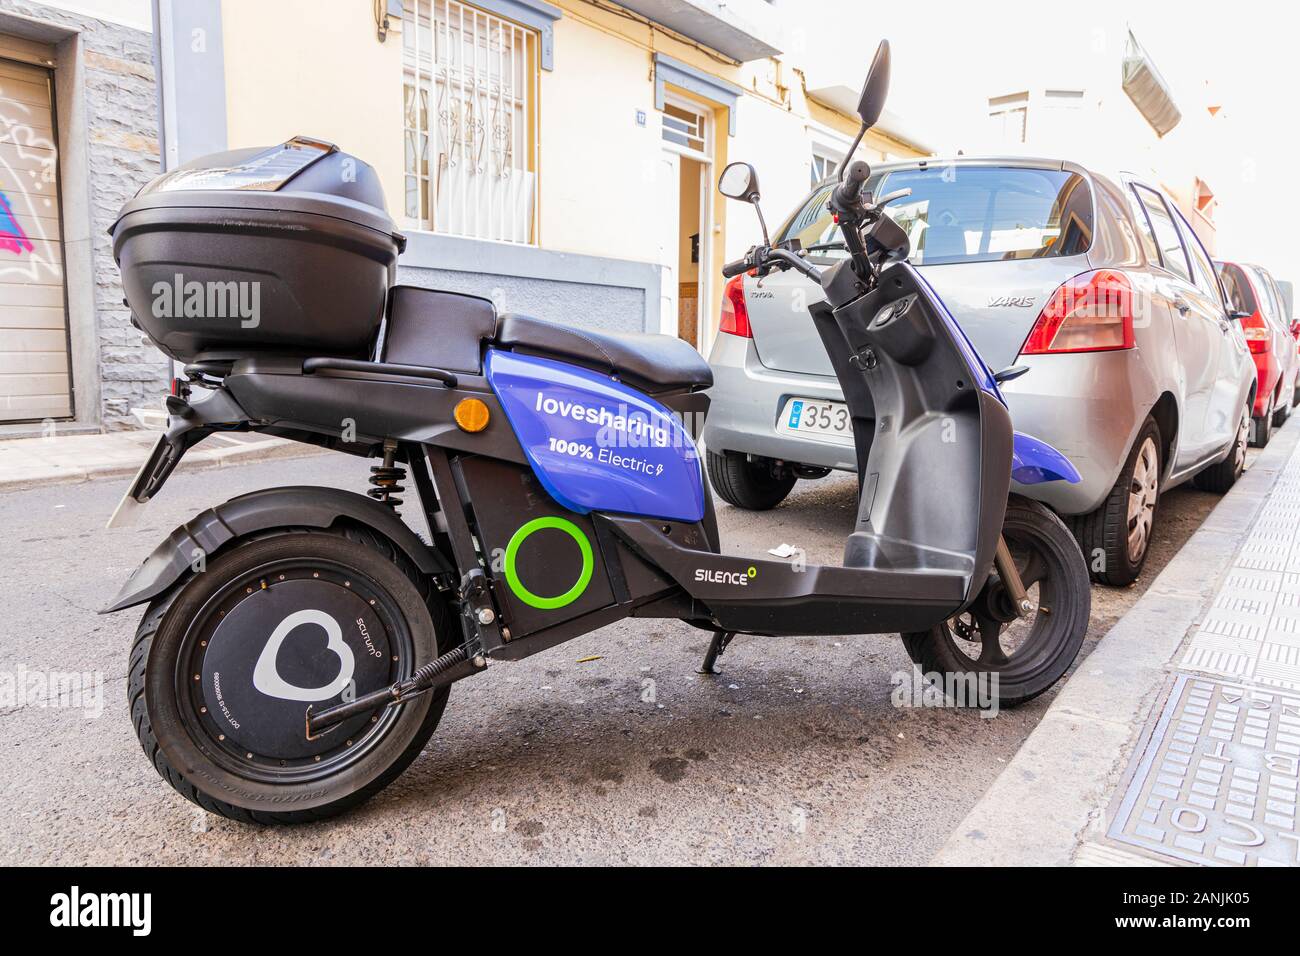 Scooter eléctrico estacionado en Santa Cruz, disponibles para alquilar,  compartir como parte de un sistema de transporte sostenible en la ciudad,  Tenerife, Islas Canarias, Sp Fotografía de stock - Alamy